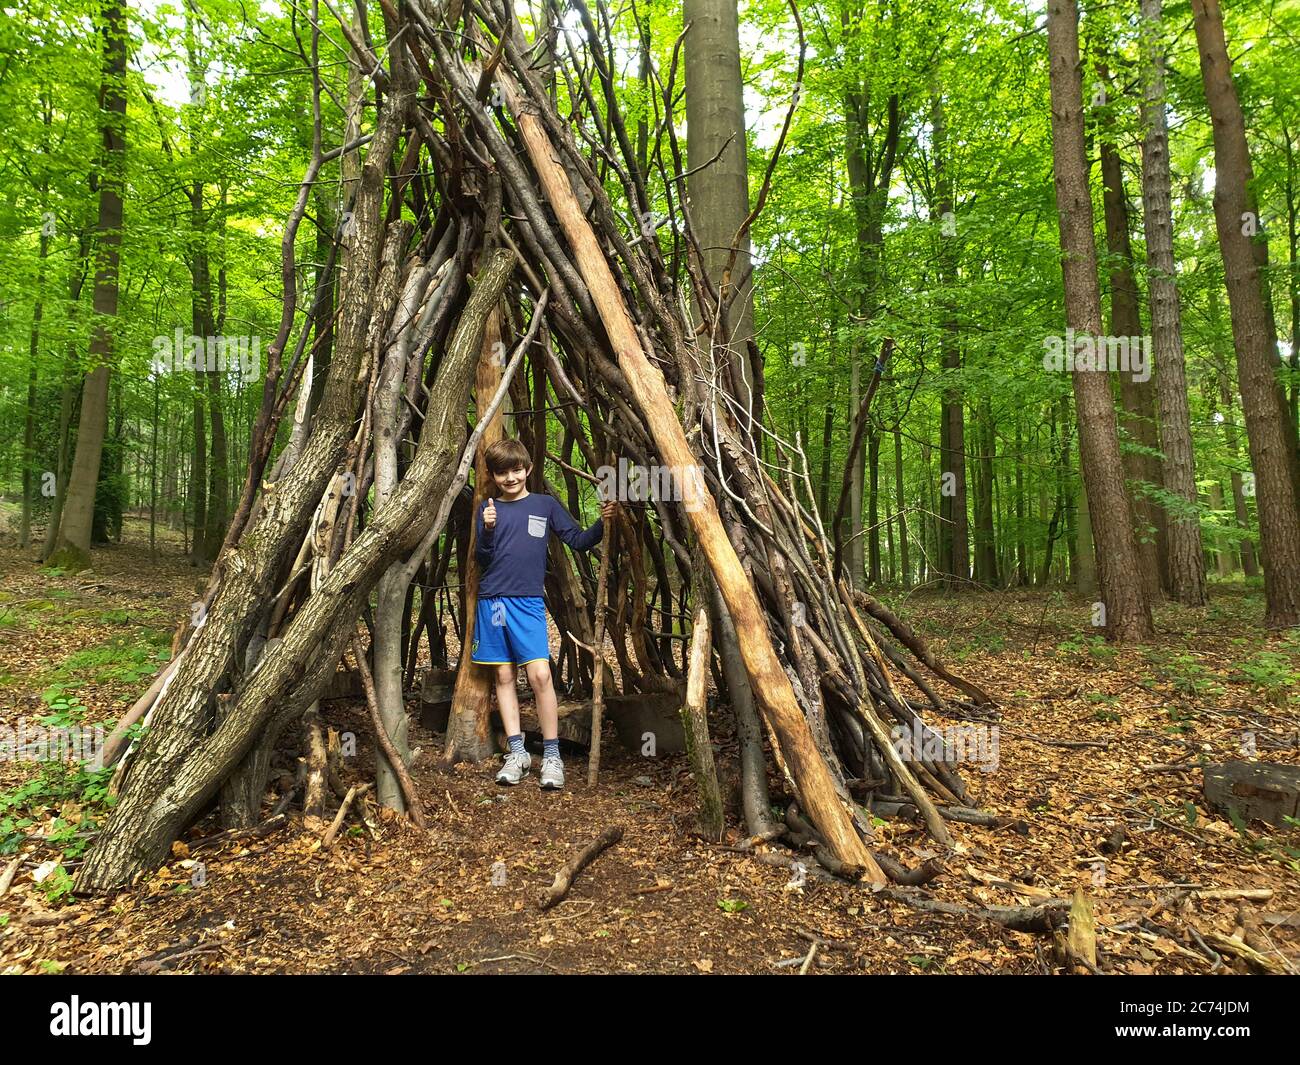 Hêtre commun (Fagus sylvatica), petit garçon dans une cabane faite de troncs et de branches sur une aire de jeux de forêt, Allemagne, Rhénanie-du-Nord-Westphalie Banque D'Images